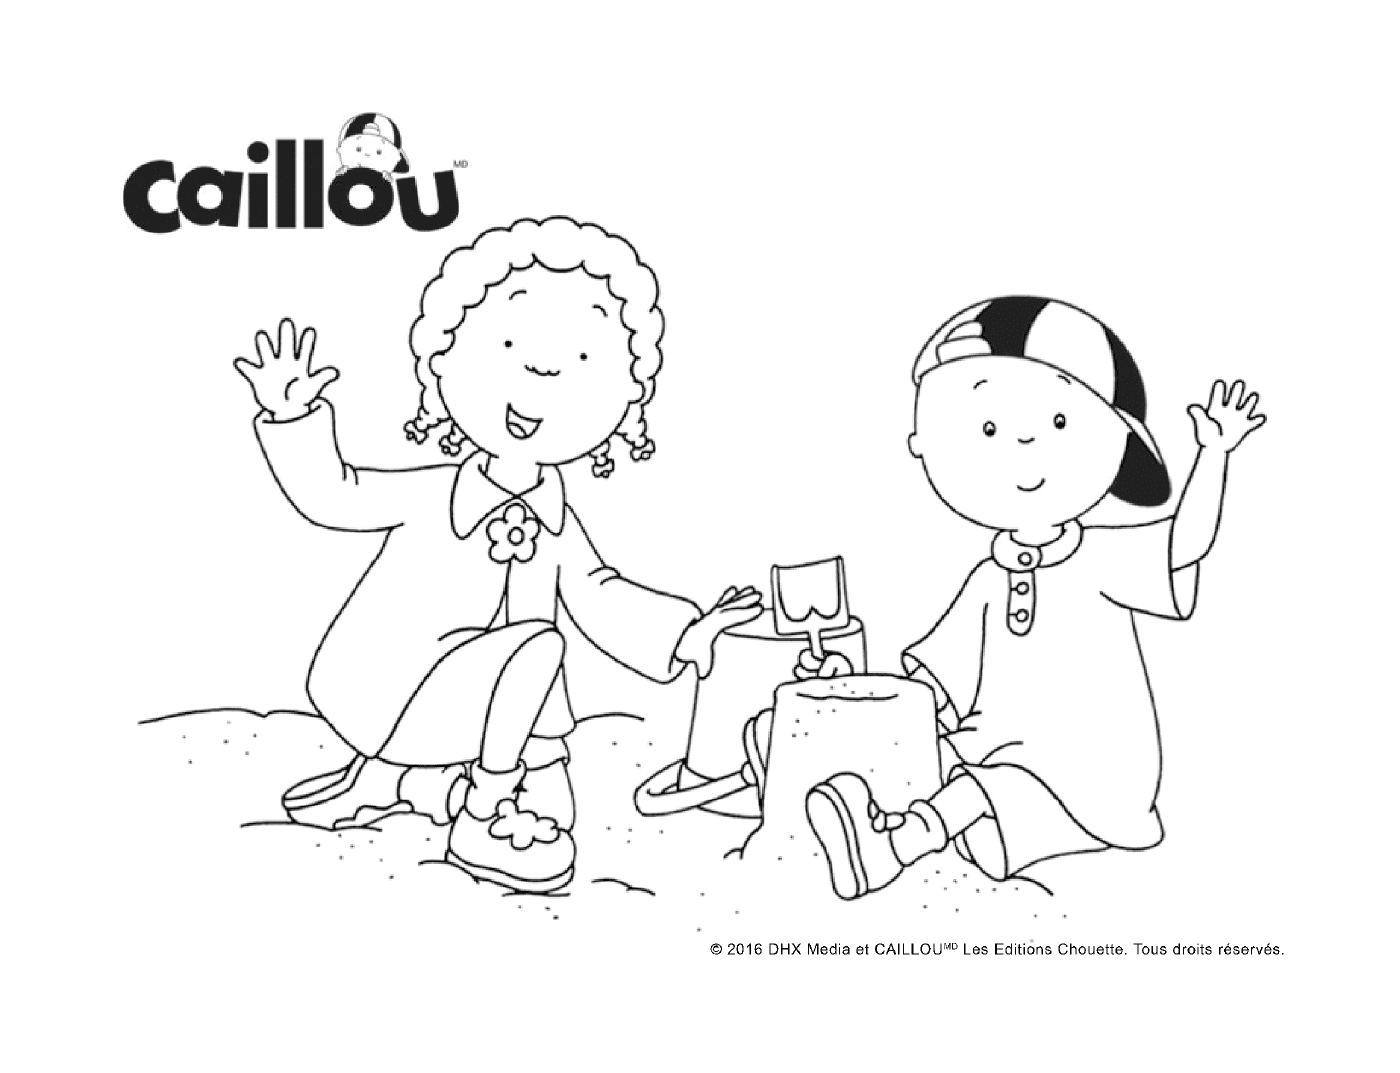  Día Internacional de la Amistad con Caillou y Clementine 